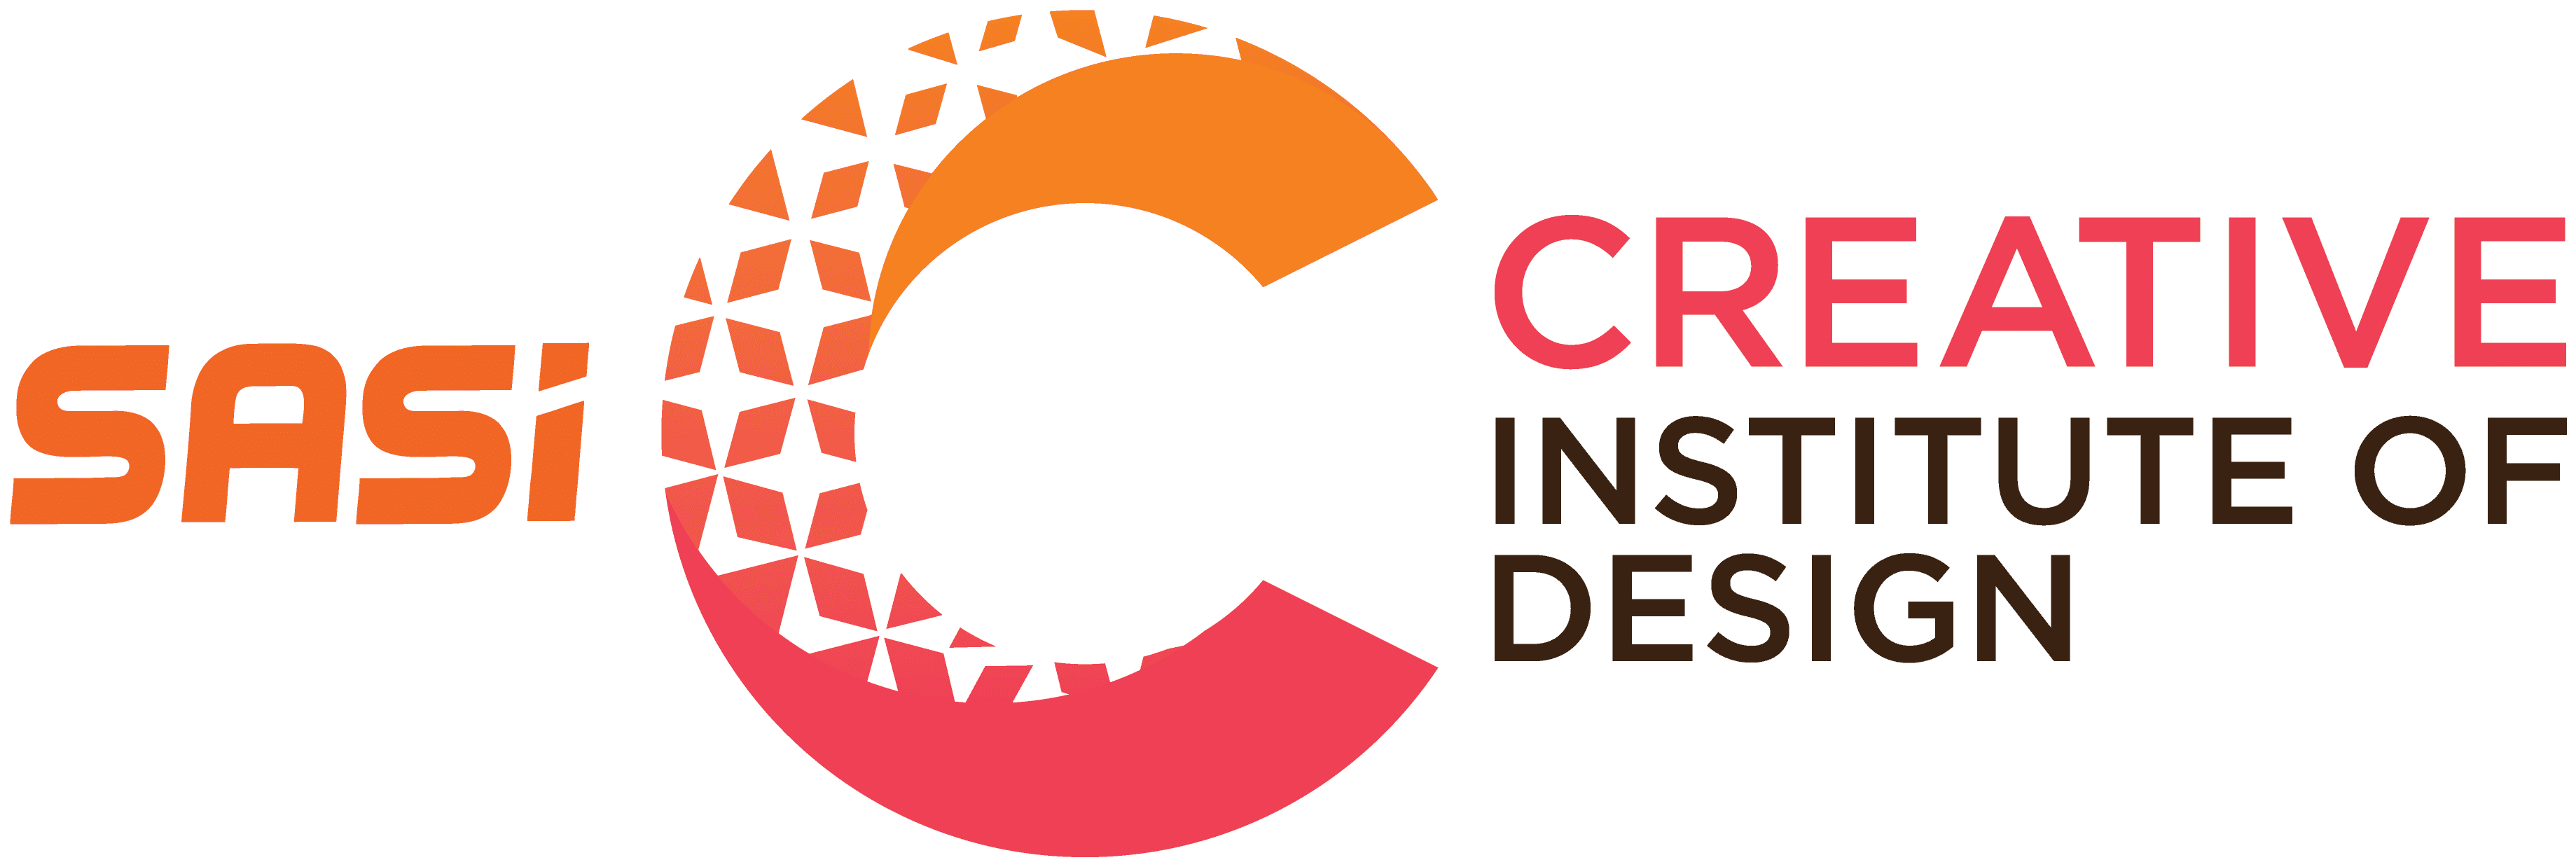 Sasi Creative Institute Of Design Logo